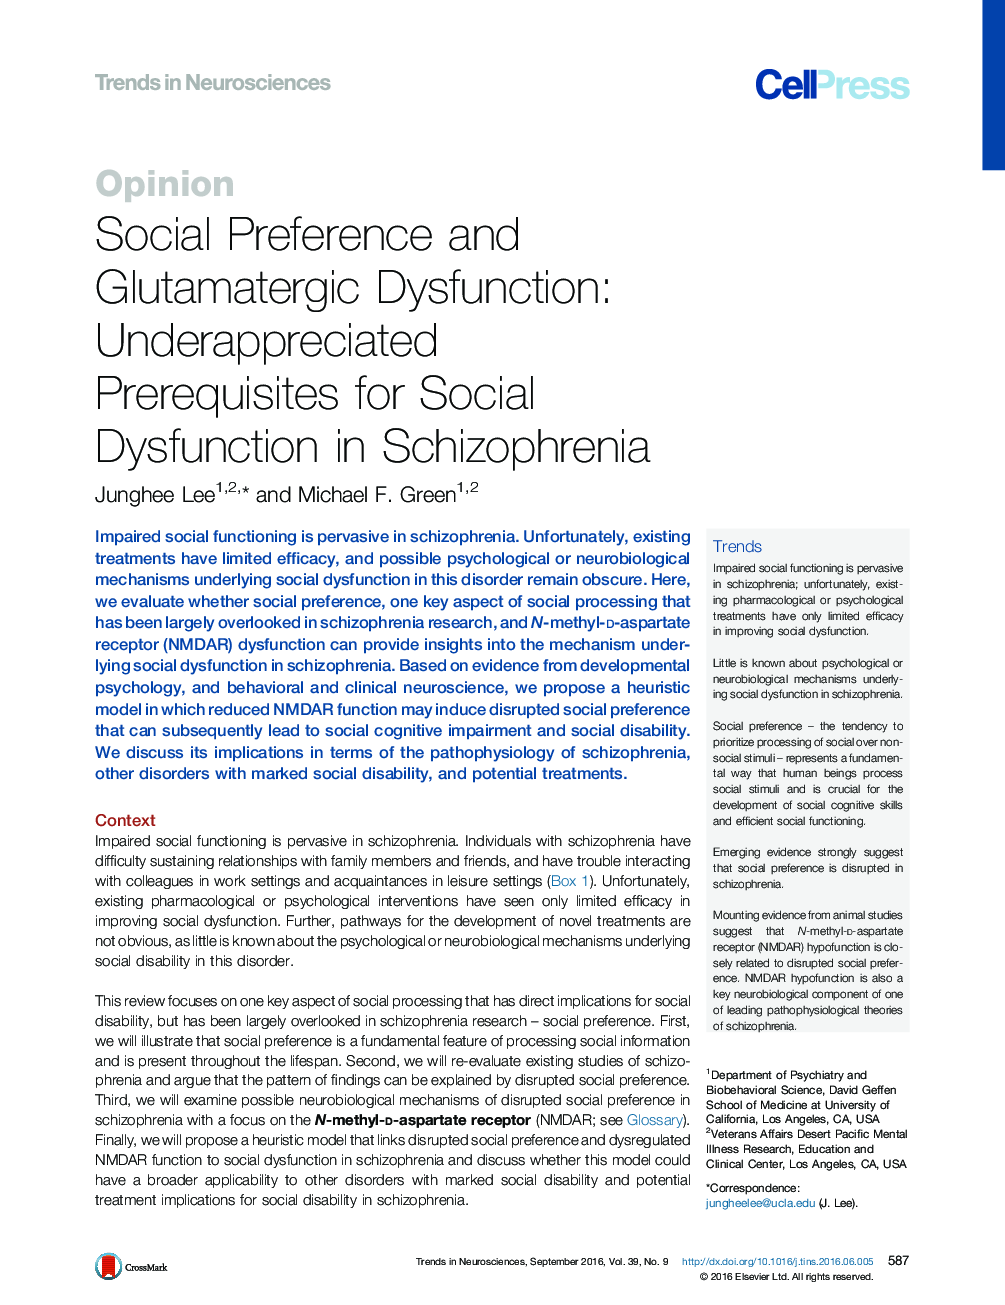 اولویت اجتماعی و اختلال گلوتاماترگیک: پیش نیازهای پیش بینی نشده برای اختلال اجتماعی در اسکیزوفرنیا 